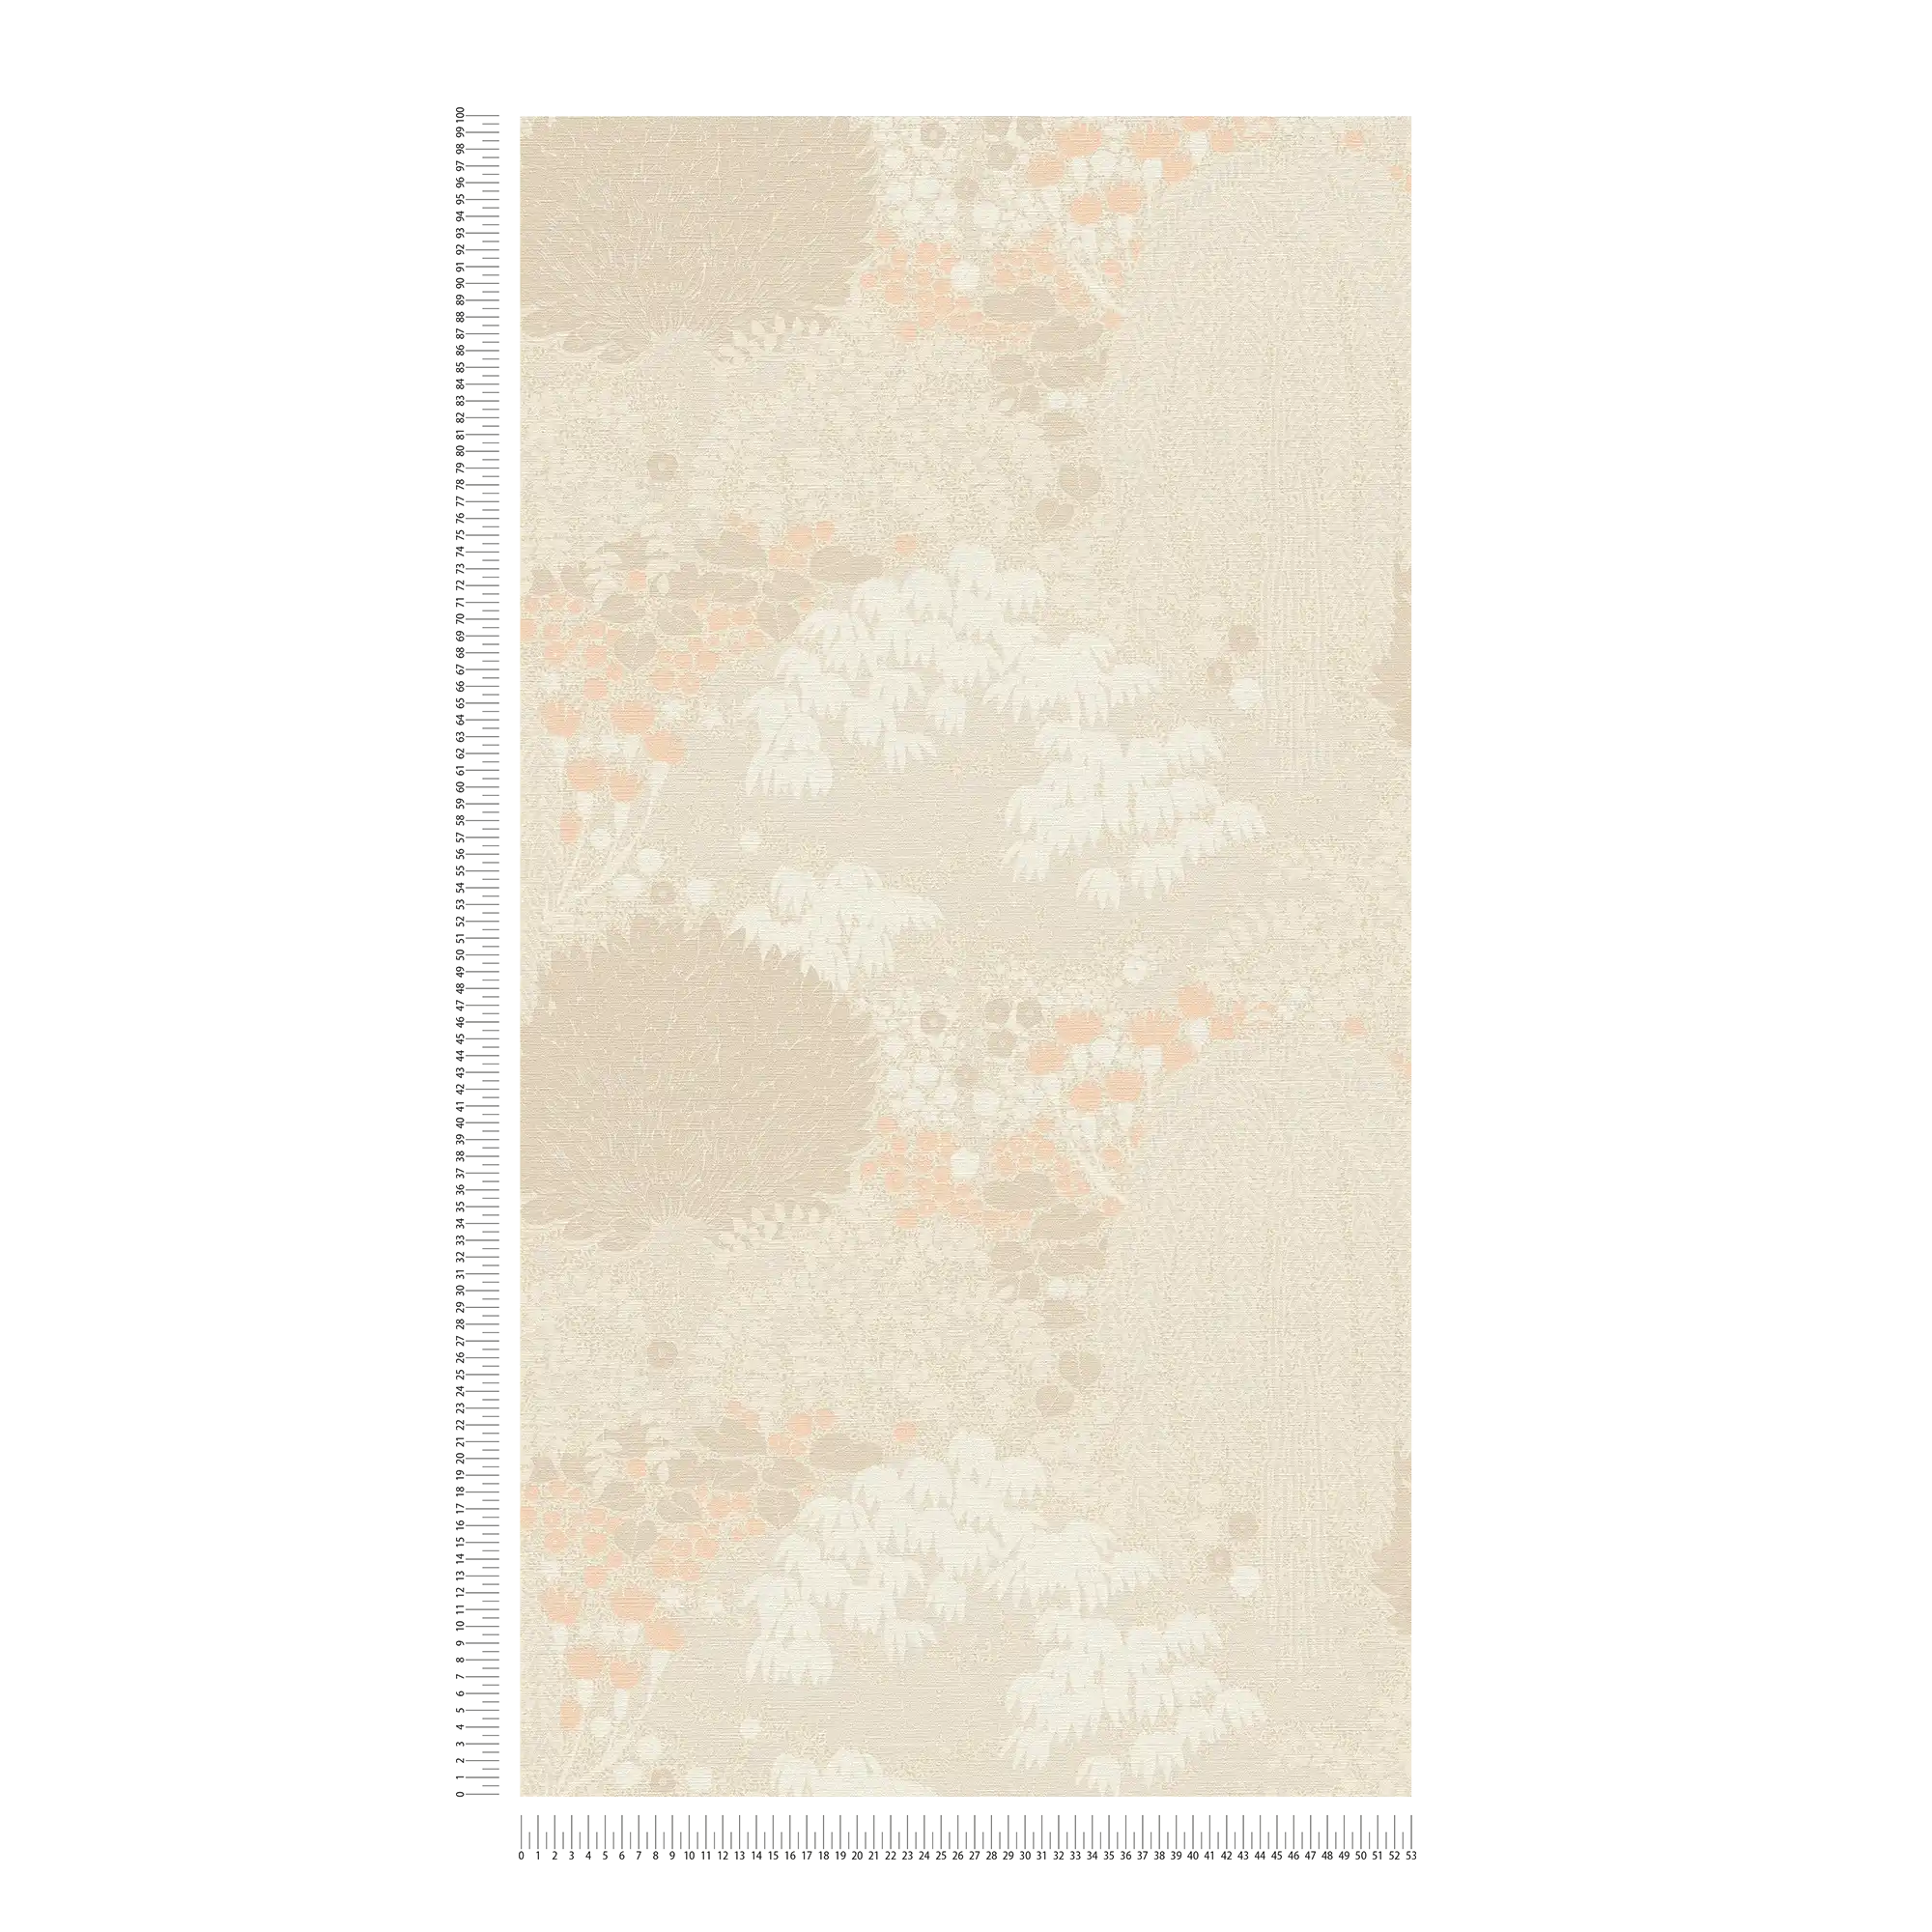             papier peint en papier floral avec feuilles légèrement structuré, mat - beige, crème, rose
        